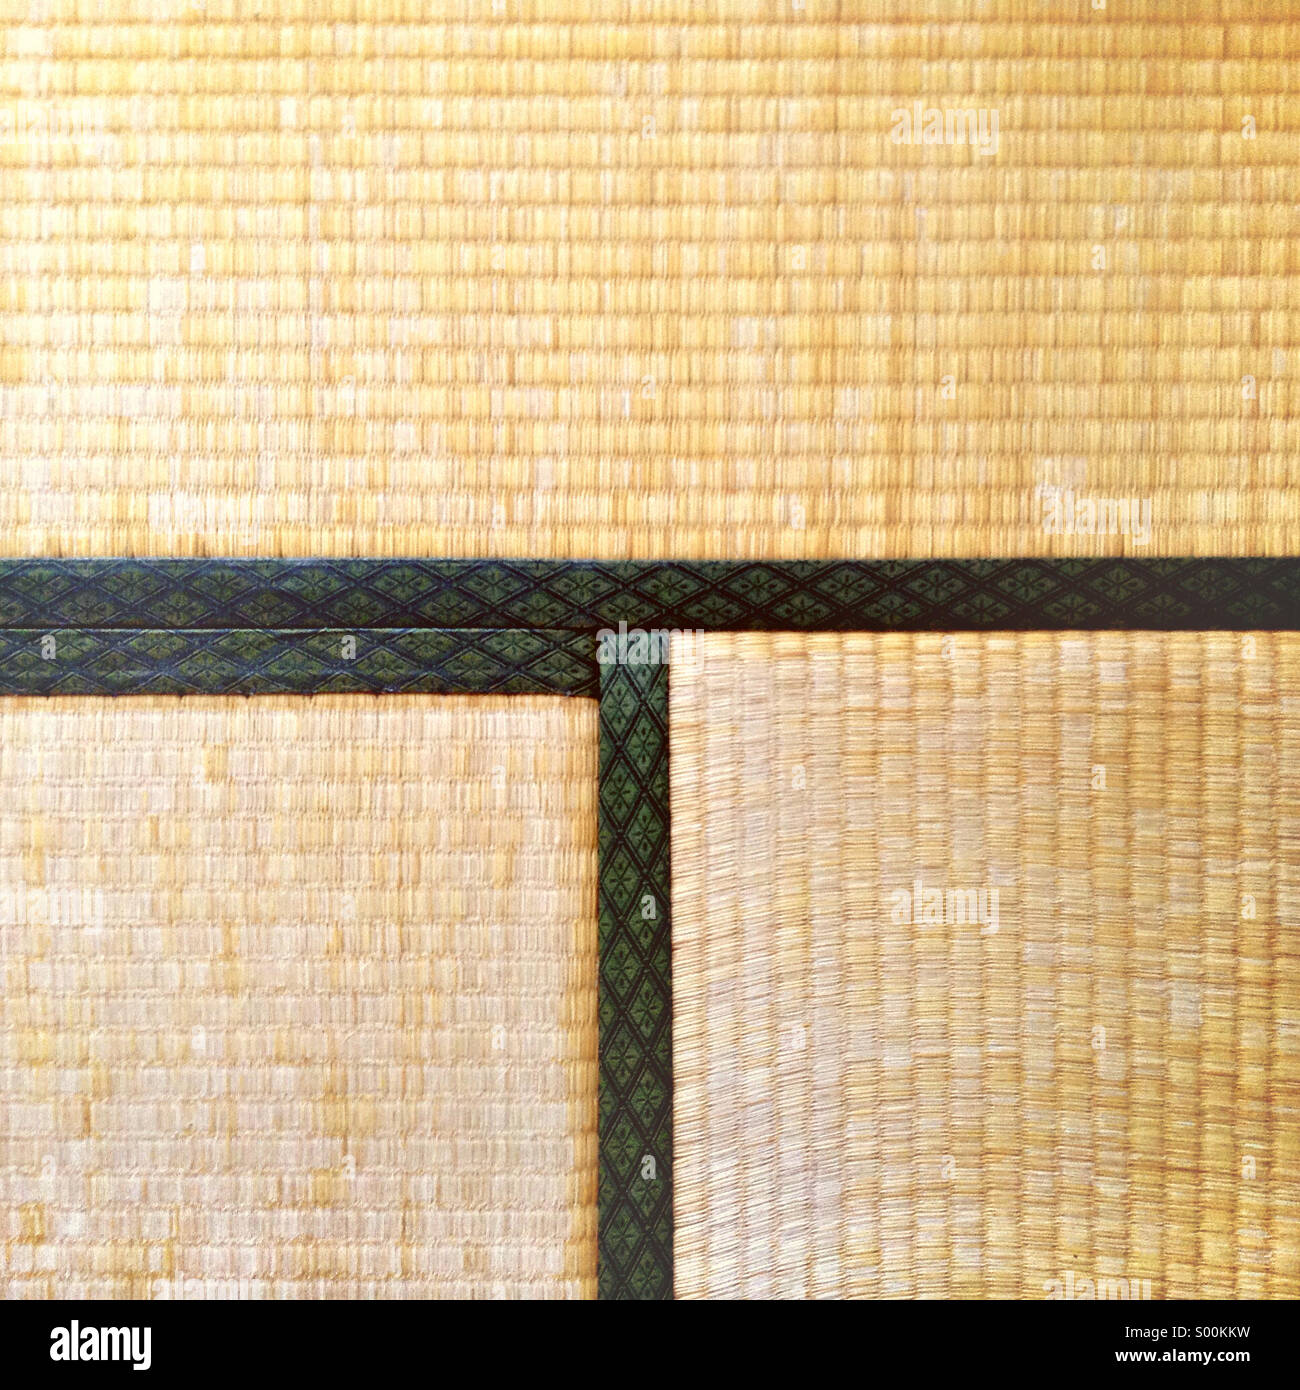 Il tatami giapponese (paglia) mat, trovata nella maggior parte delle abitazioni del paese. Foto Stock